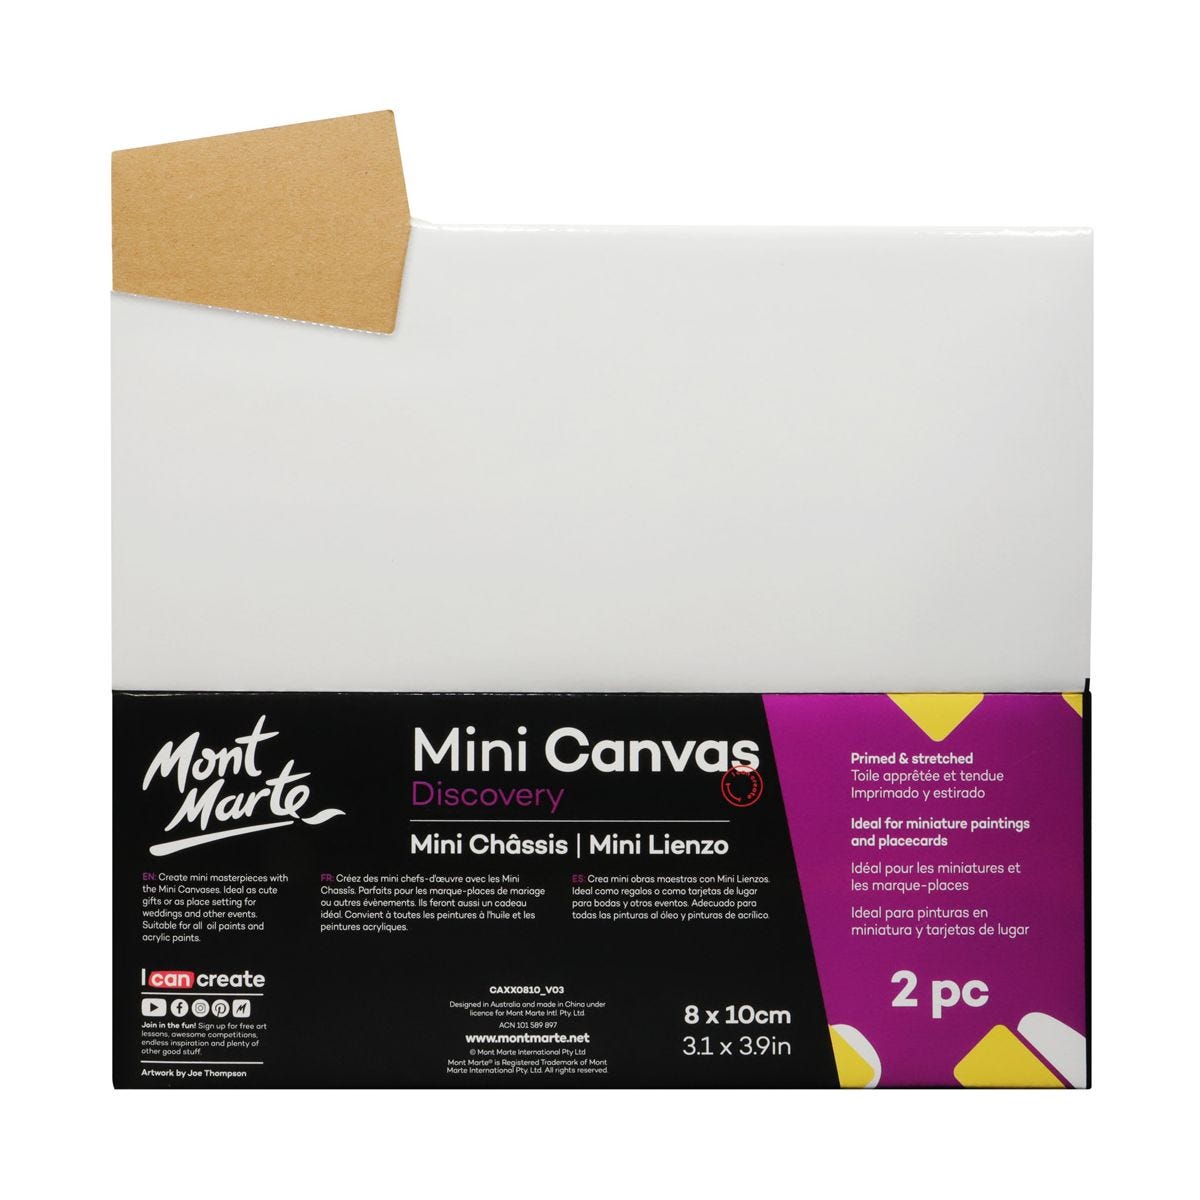 Bộ 2 Khung Canvas Mini (Toan) Mont Marte Dùng Để Vẽ Màu Acrylic 8x10cm - Mini Canvas Discovery 8 x 10cm (3.1 x 3.9in) 2pce